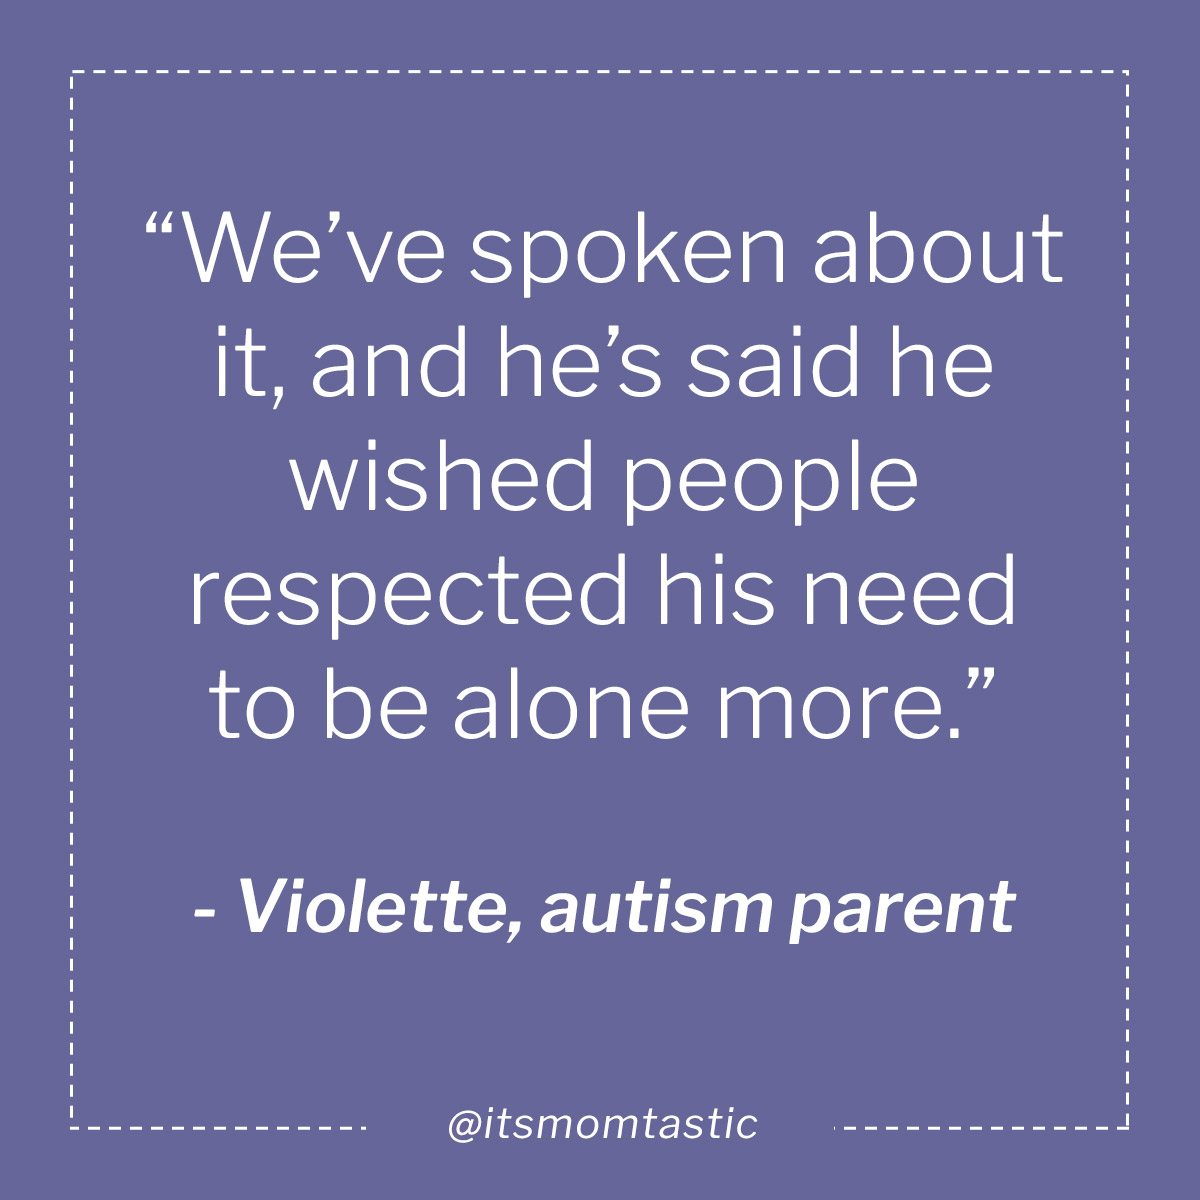 Violette, autism parent